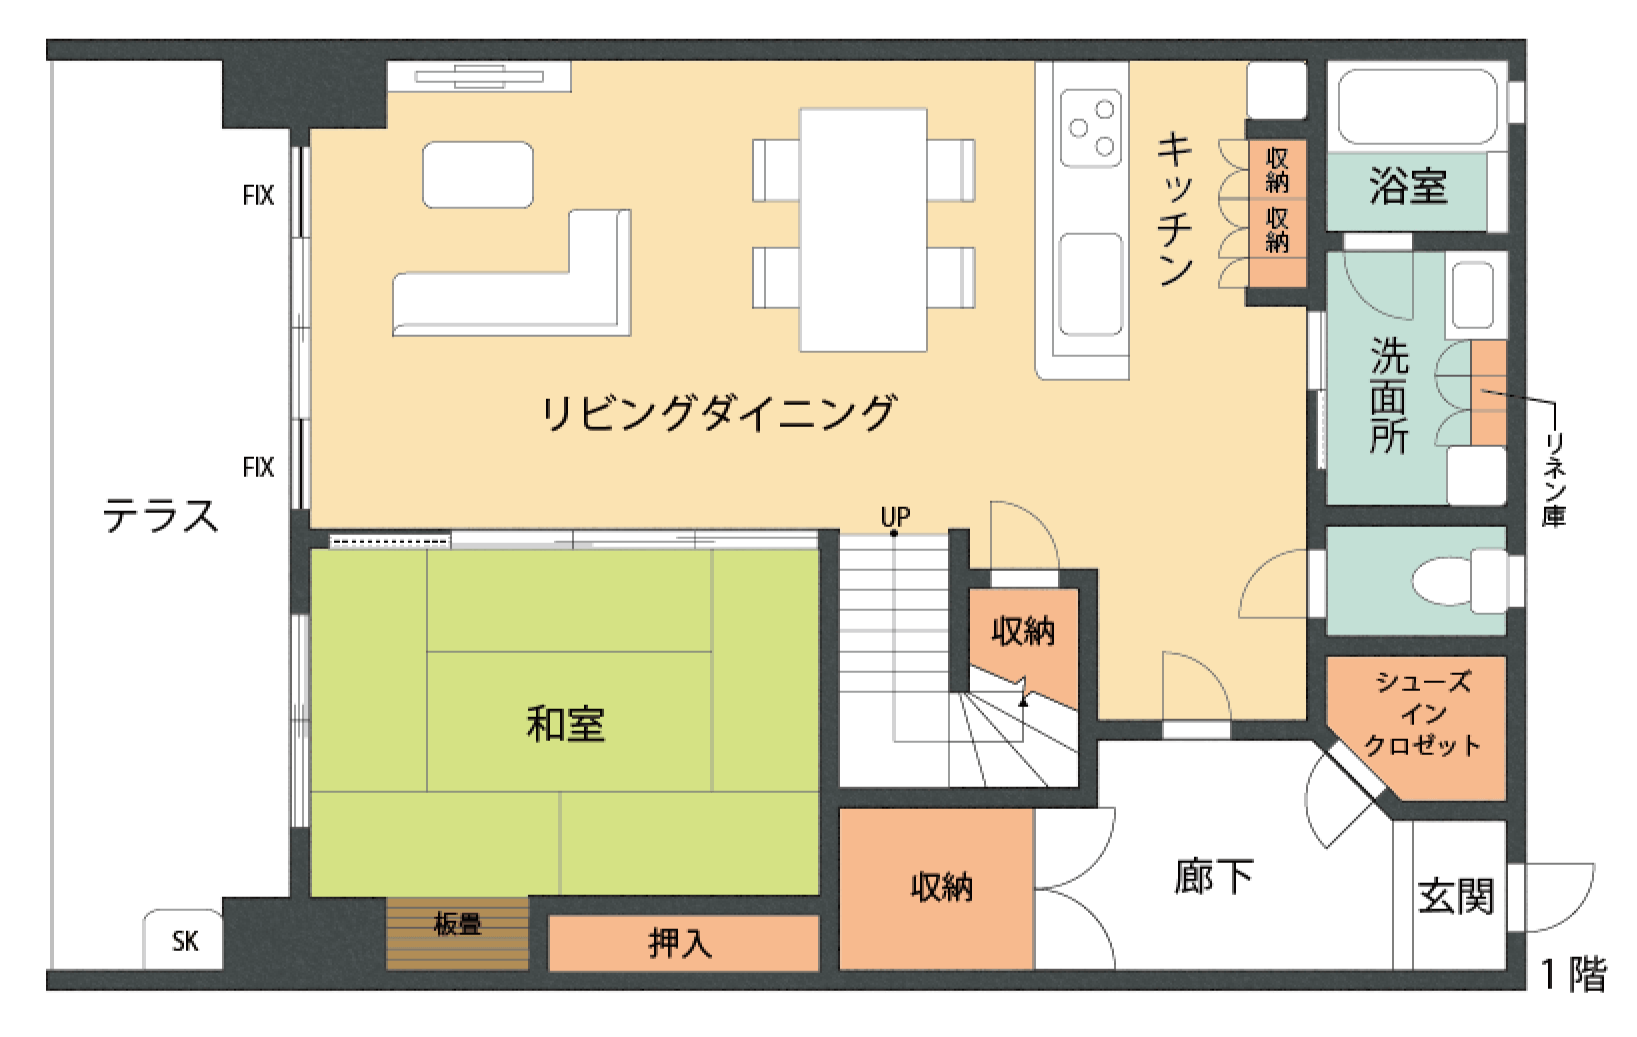 おすすめ間取り図例あり 家の間取りの上手な考え方 Tokyo 14区